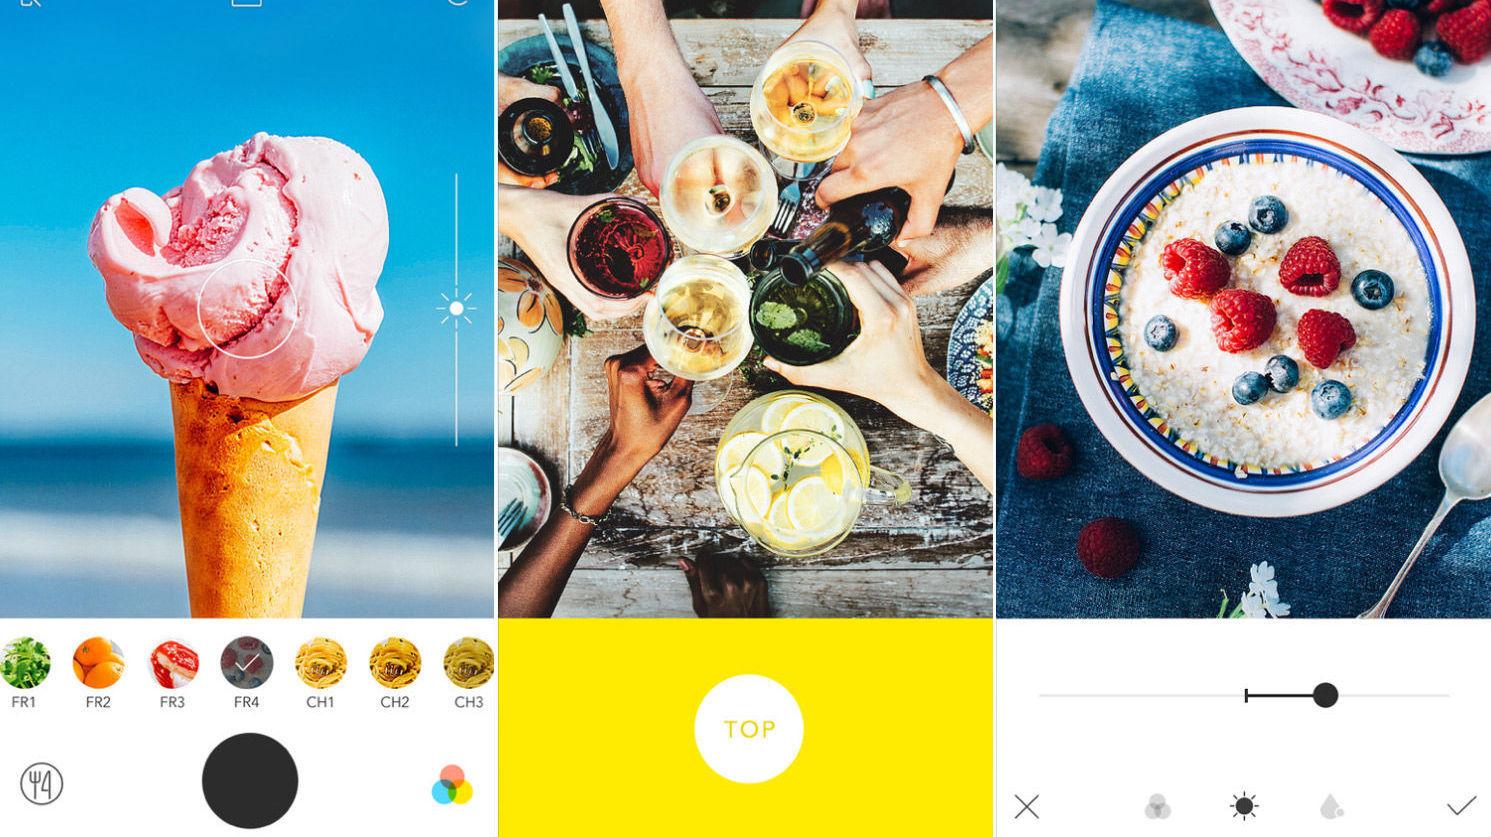 MATNYTTIG: Foodie-appen er utviklet for at du skal kunne ta det beste matbildet. Foto: Skjermdump